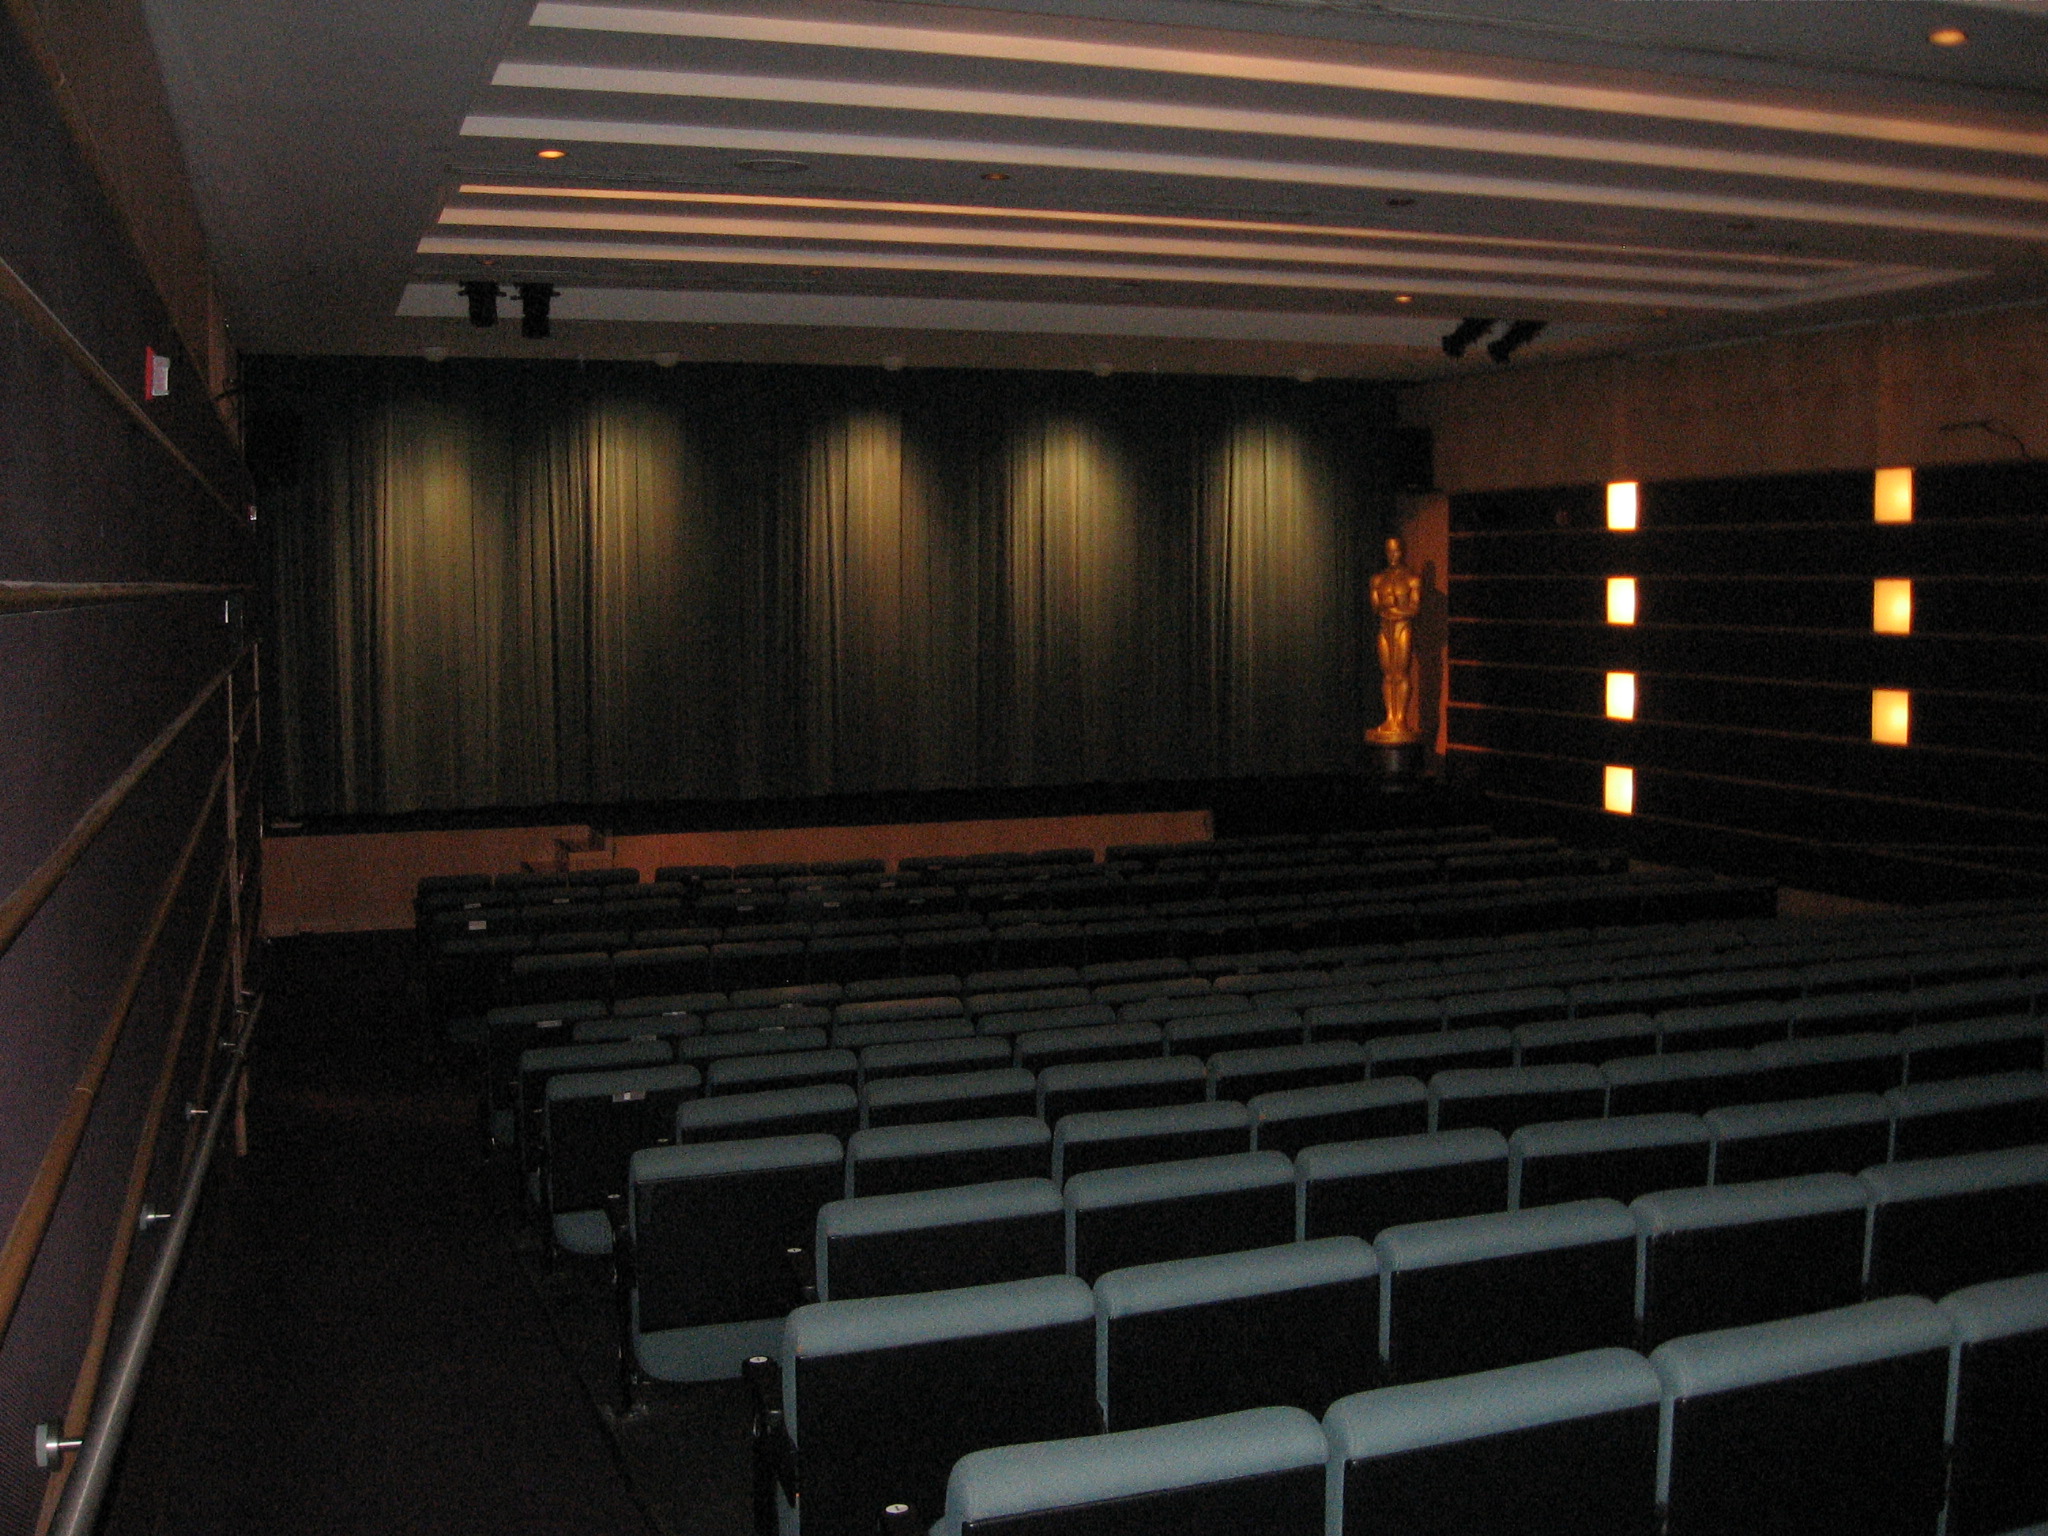 Original Auditorium Front View